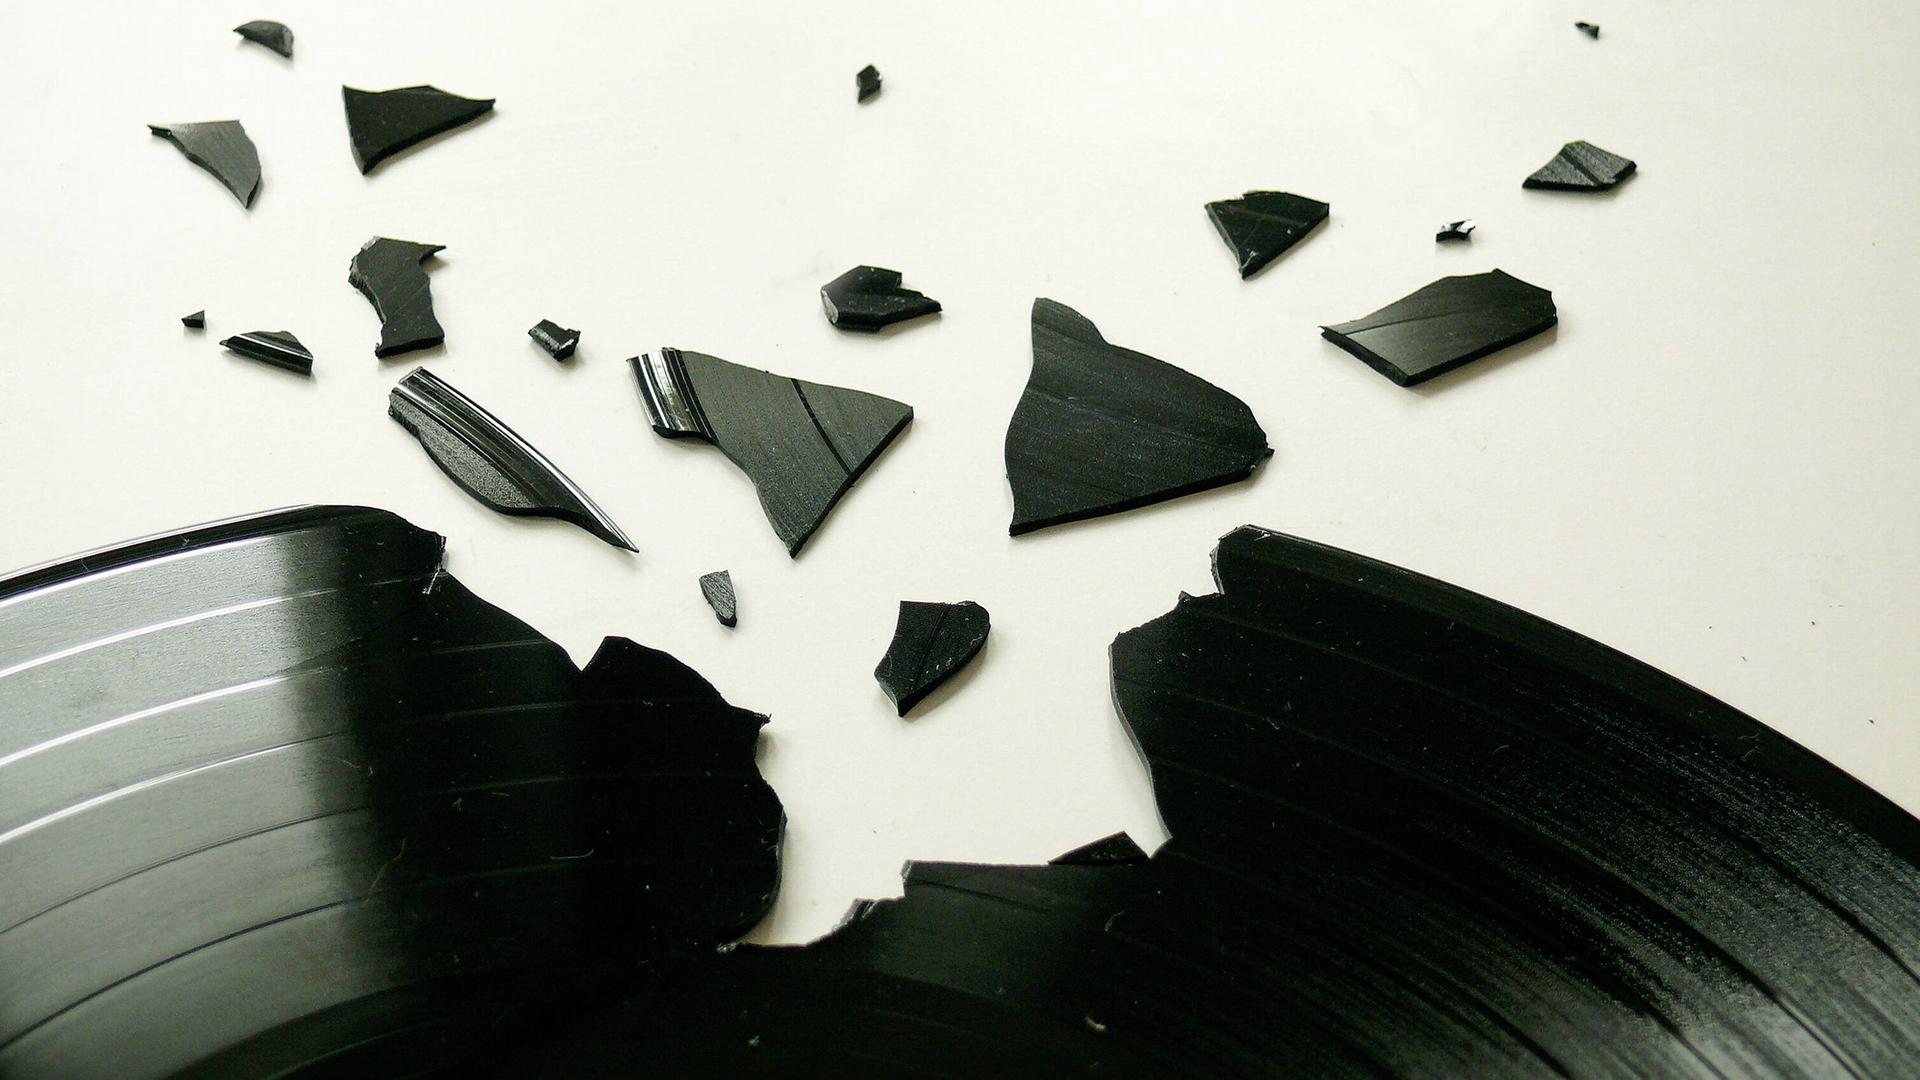 Eine schwarze Platte ist an einer Stelle zerbrochen. Die Bruckstücke liegen drumherum.